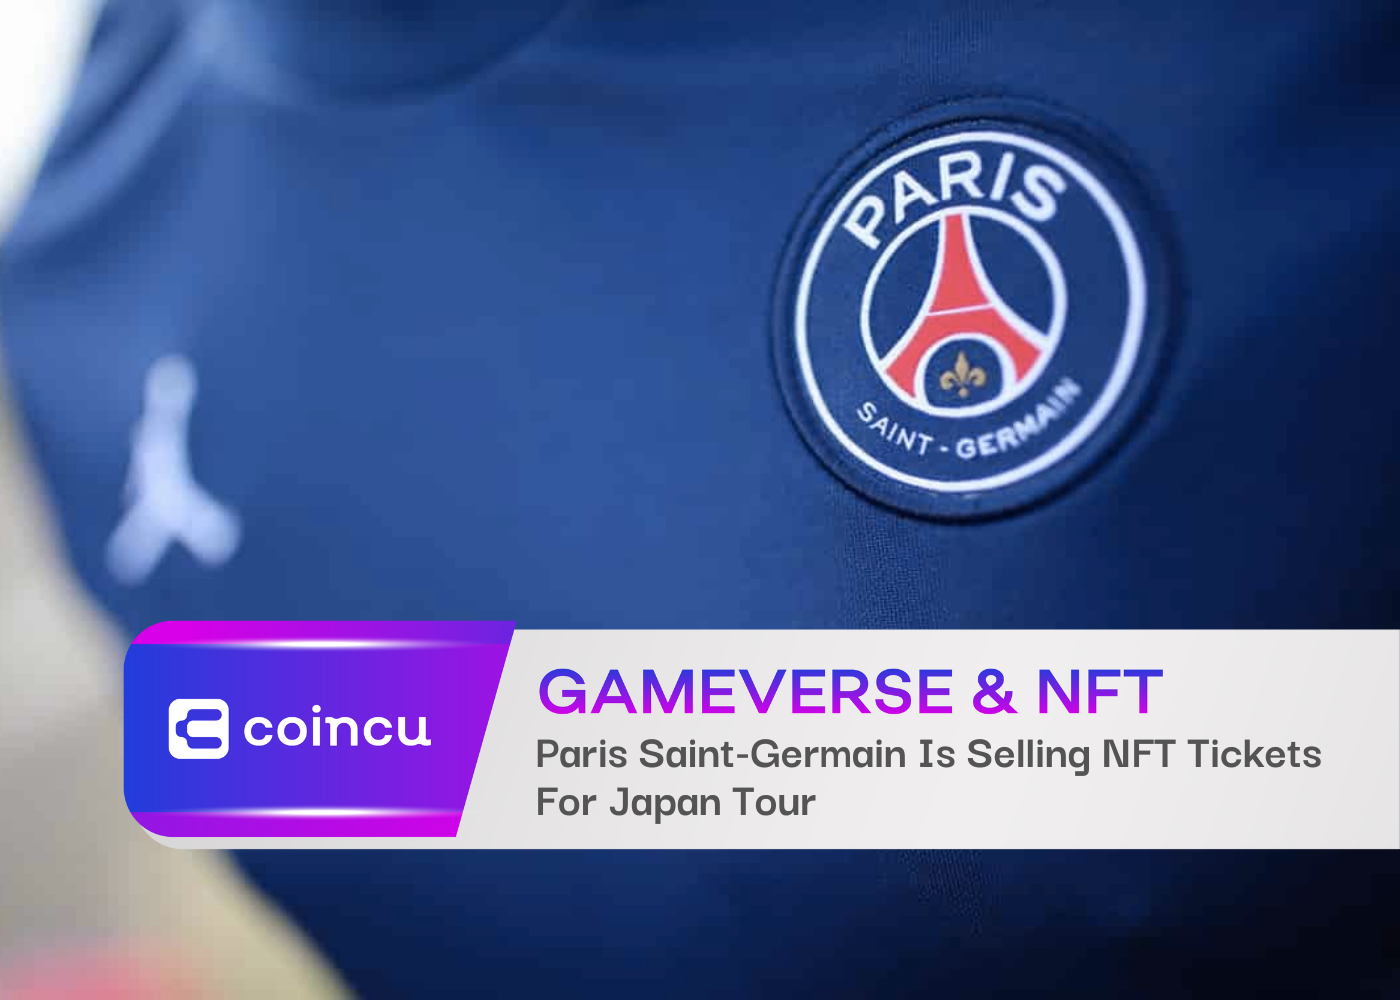 Paris Saint-Germain Is Selling NFT Tickets For Japan Tour